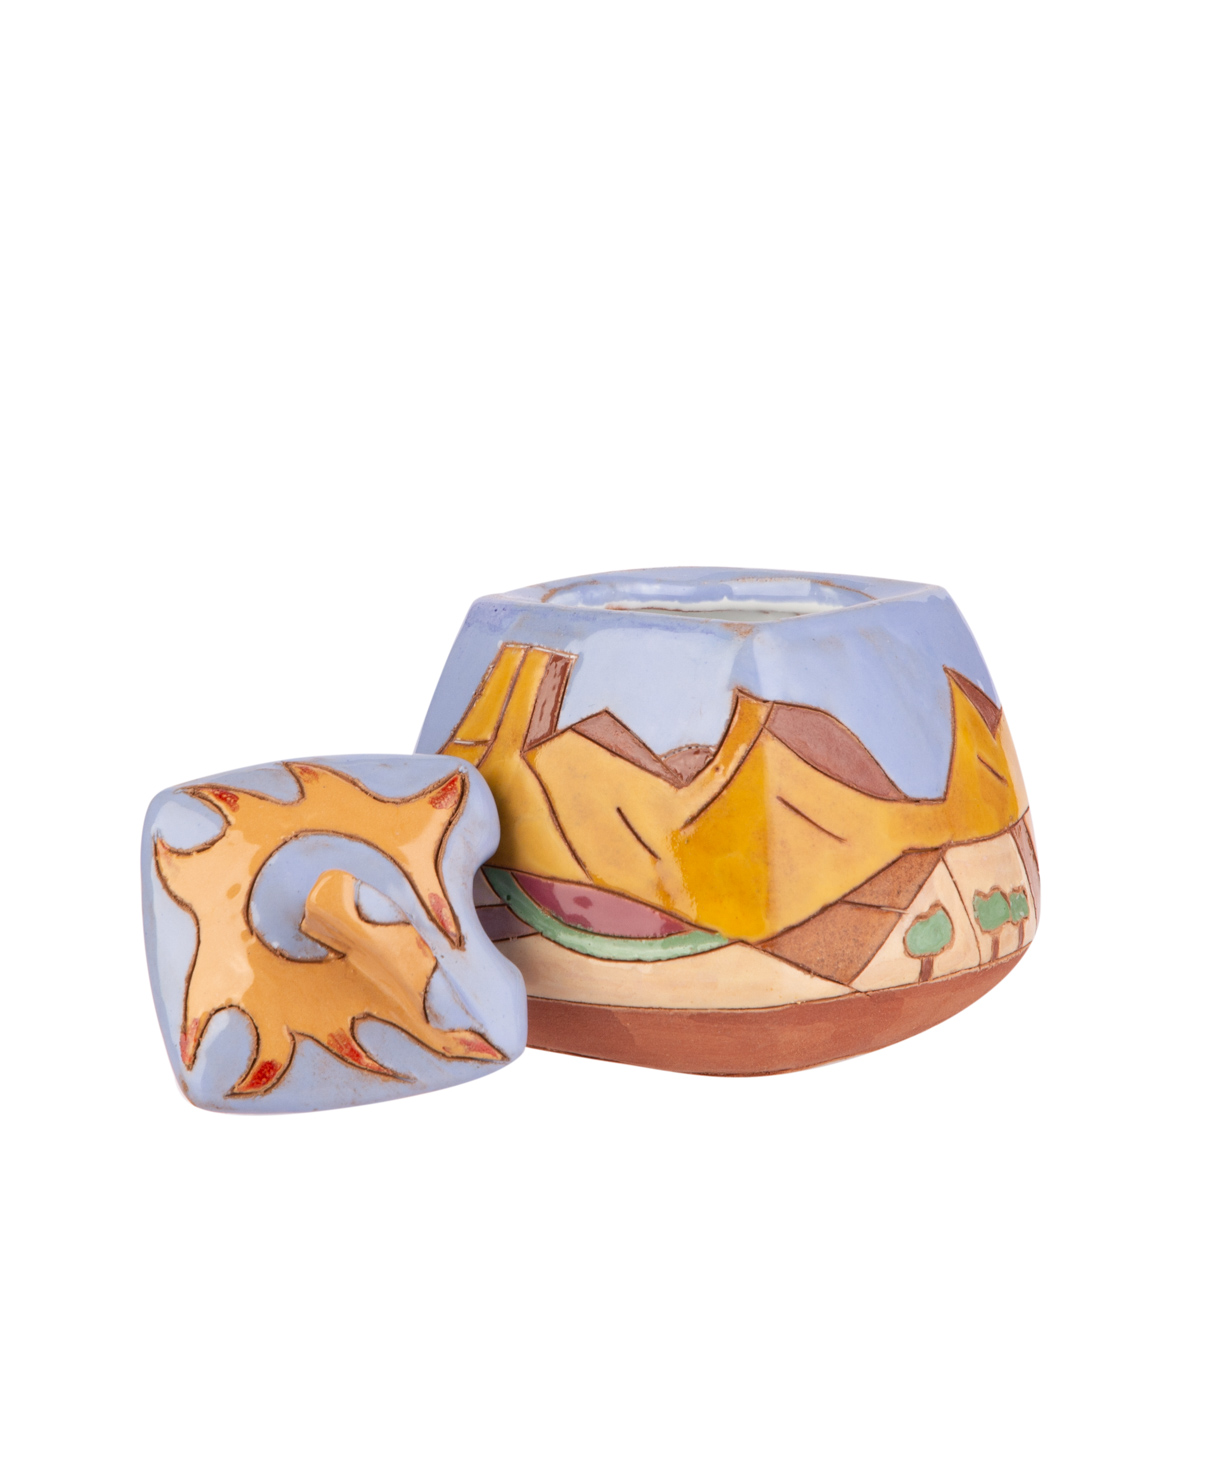 Շաքարաման «Nuard Ceramics» Սարյան